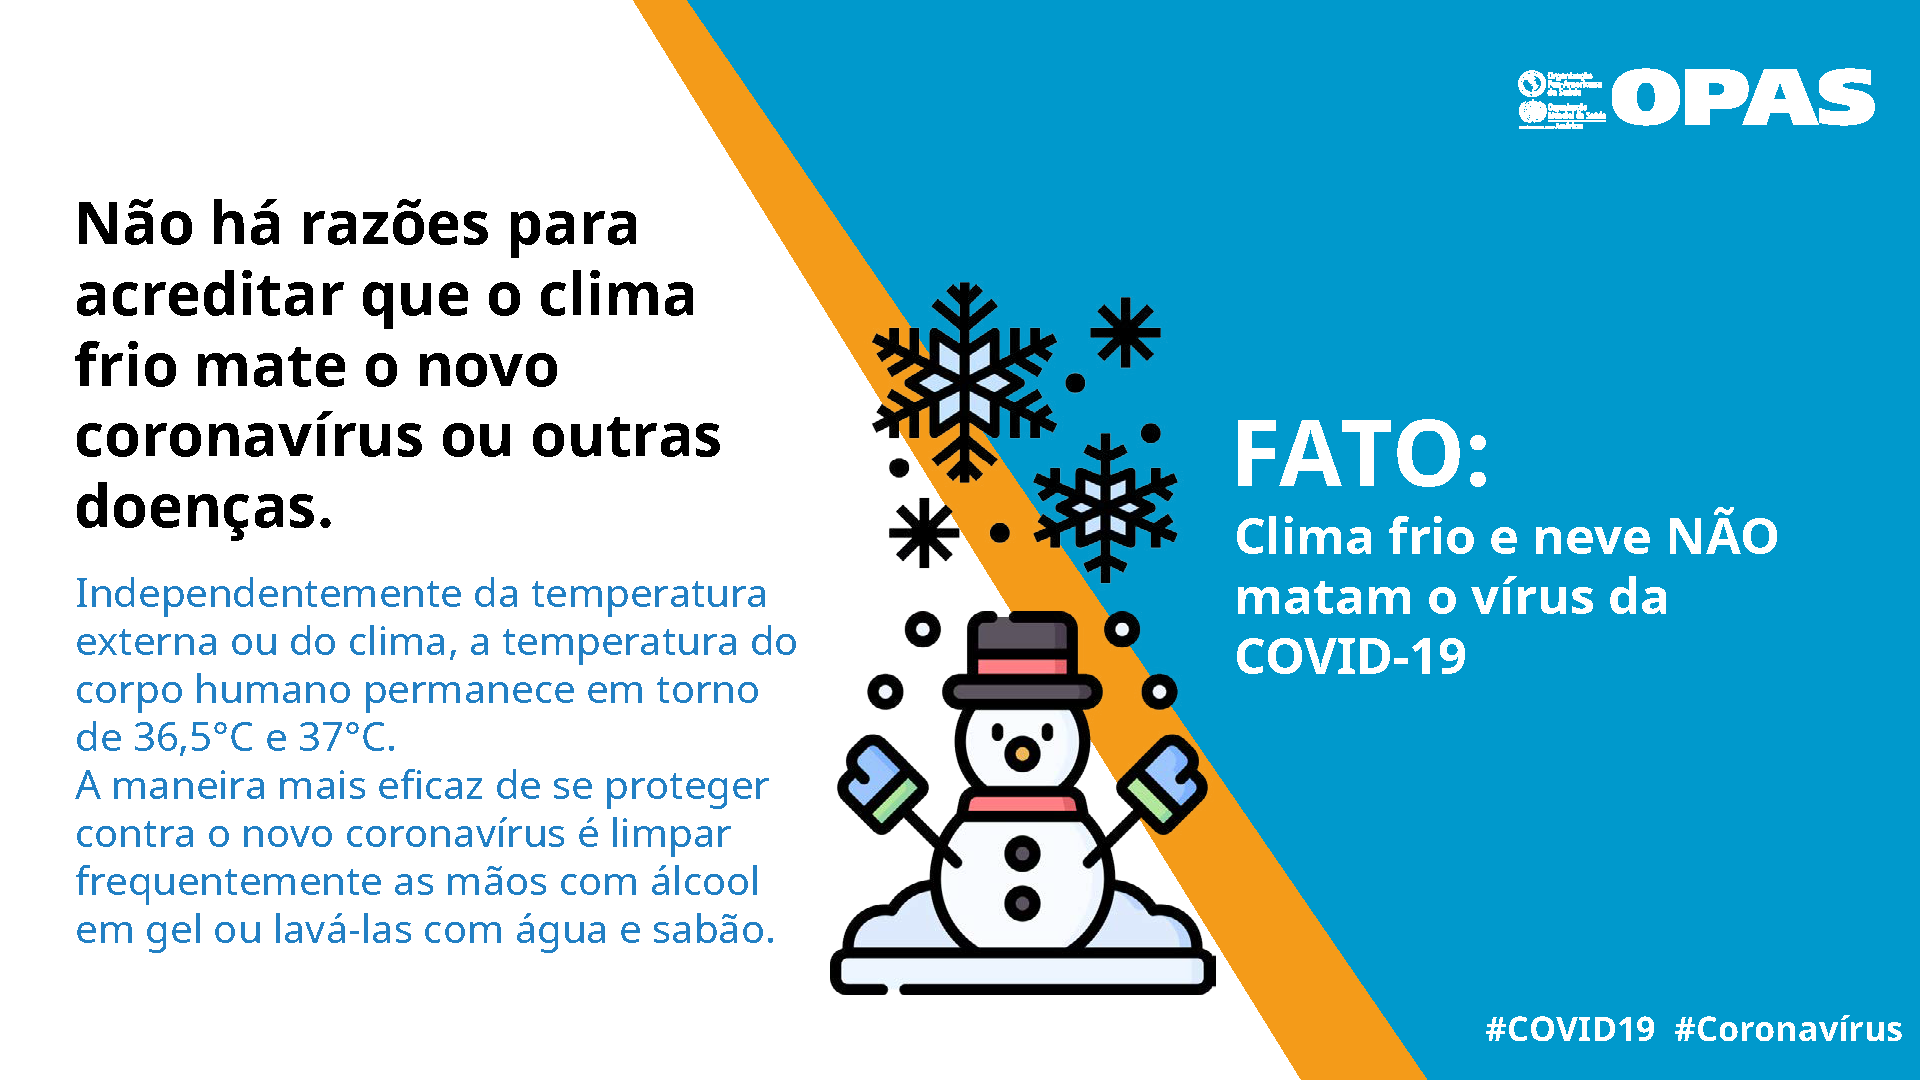 FATO: Clima frio e neve NÃO matam o vírus da COVID-19